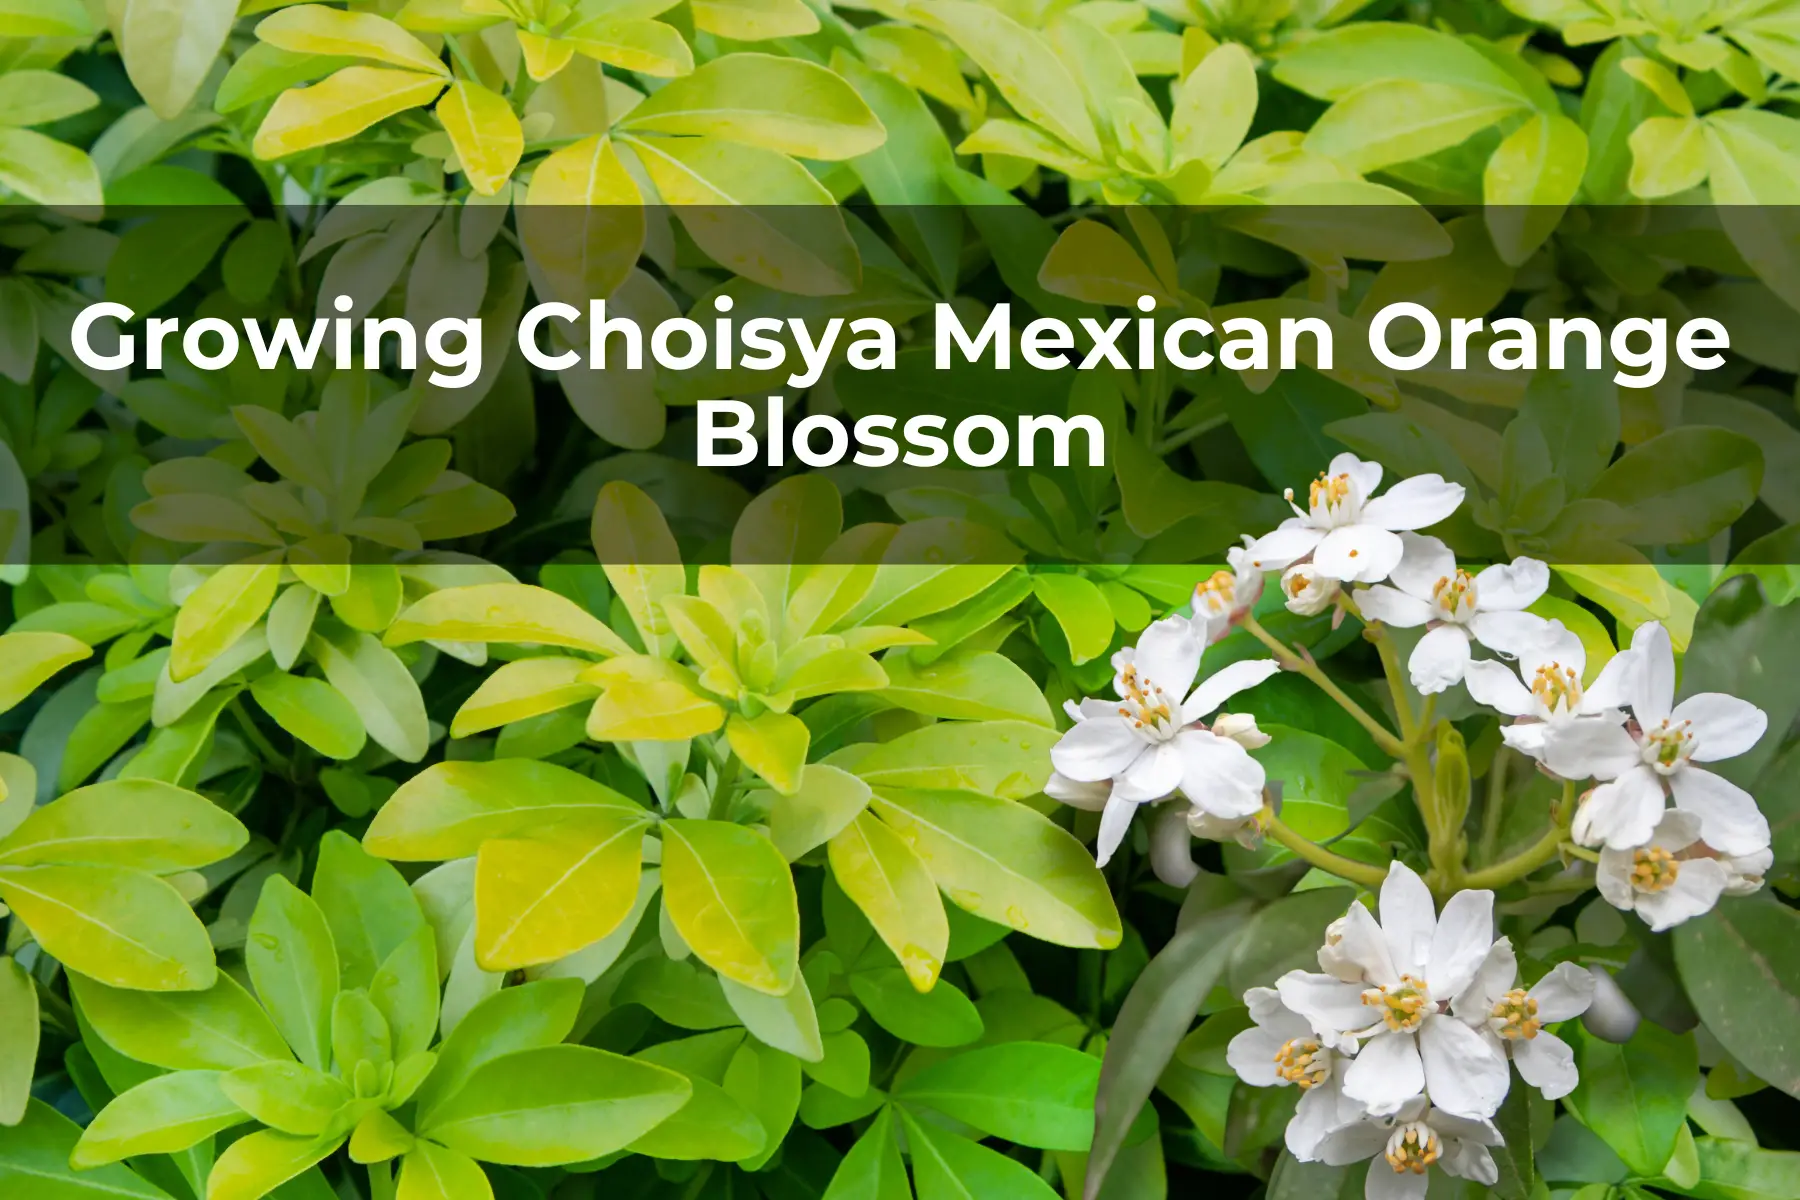 Growing Choisya Mexican Orange Blossom